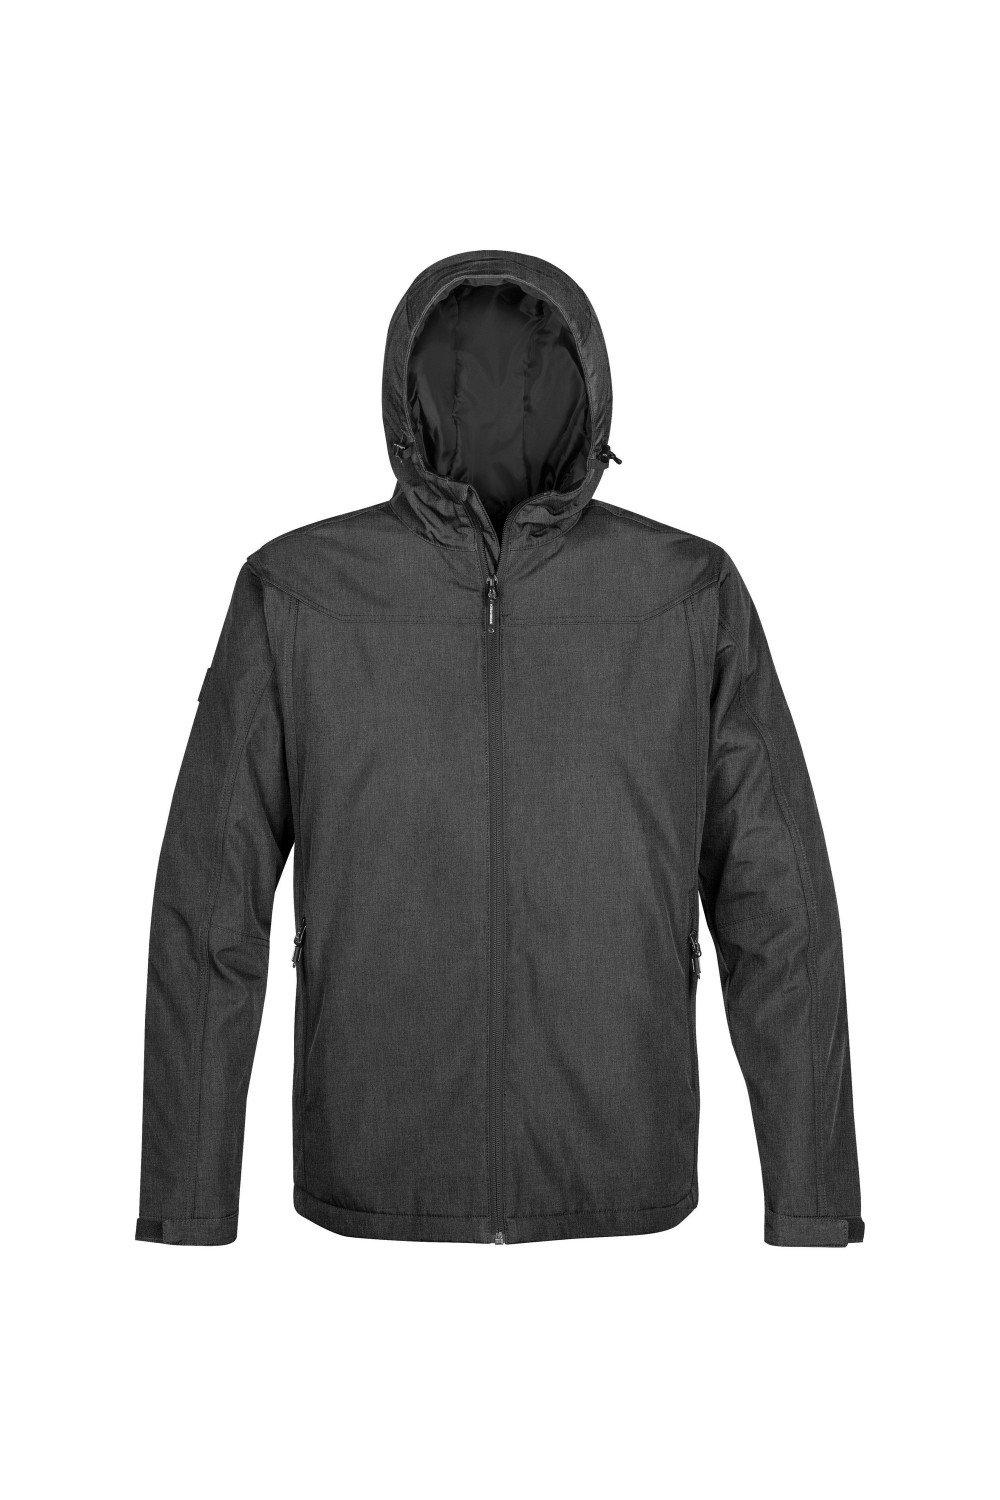 Тепловая куртка Endurance Stormtech, серый